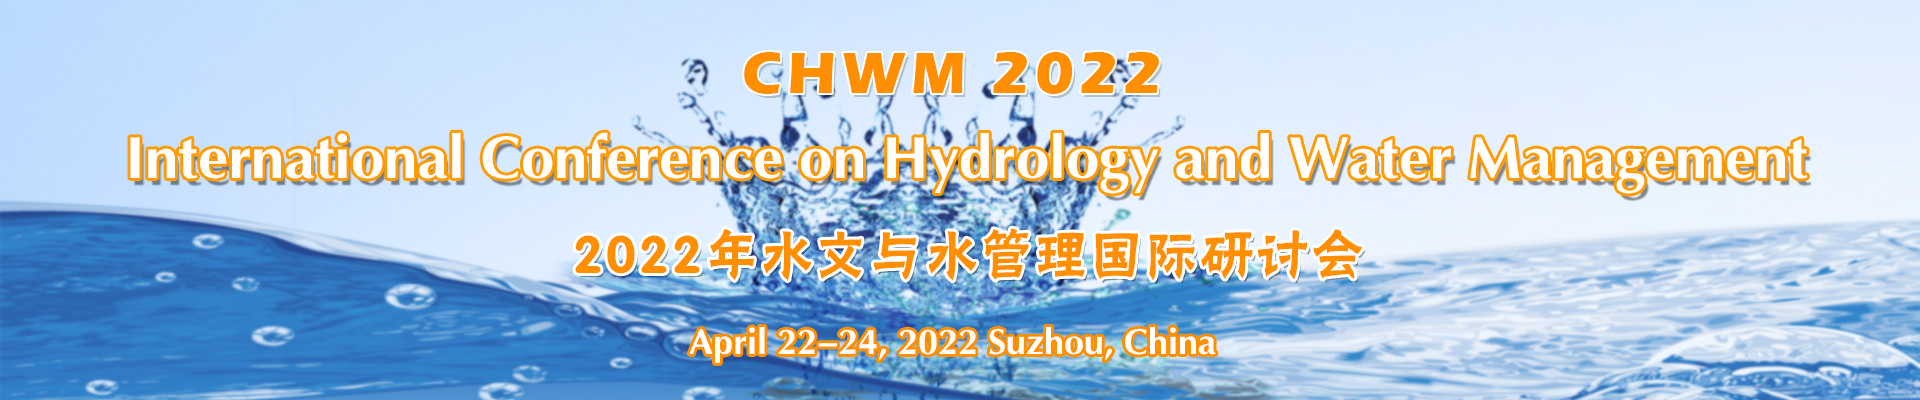 International Conference on Hydrology and Water Management (CHWM 2022), Suzhou, Jiangsu, China